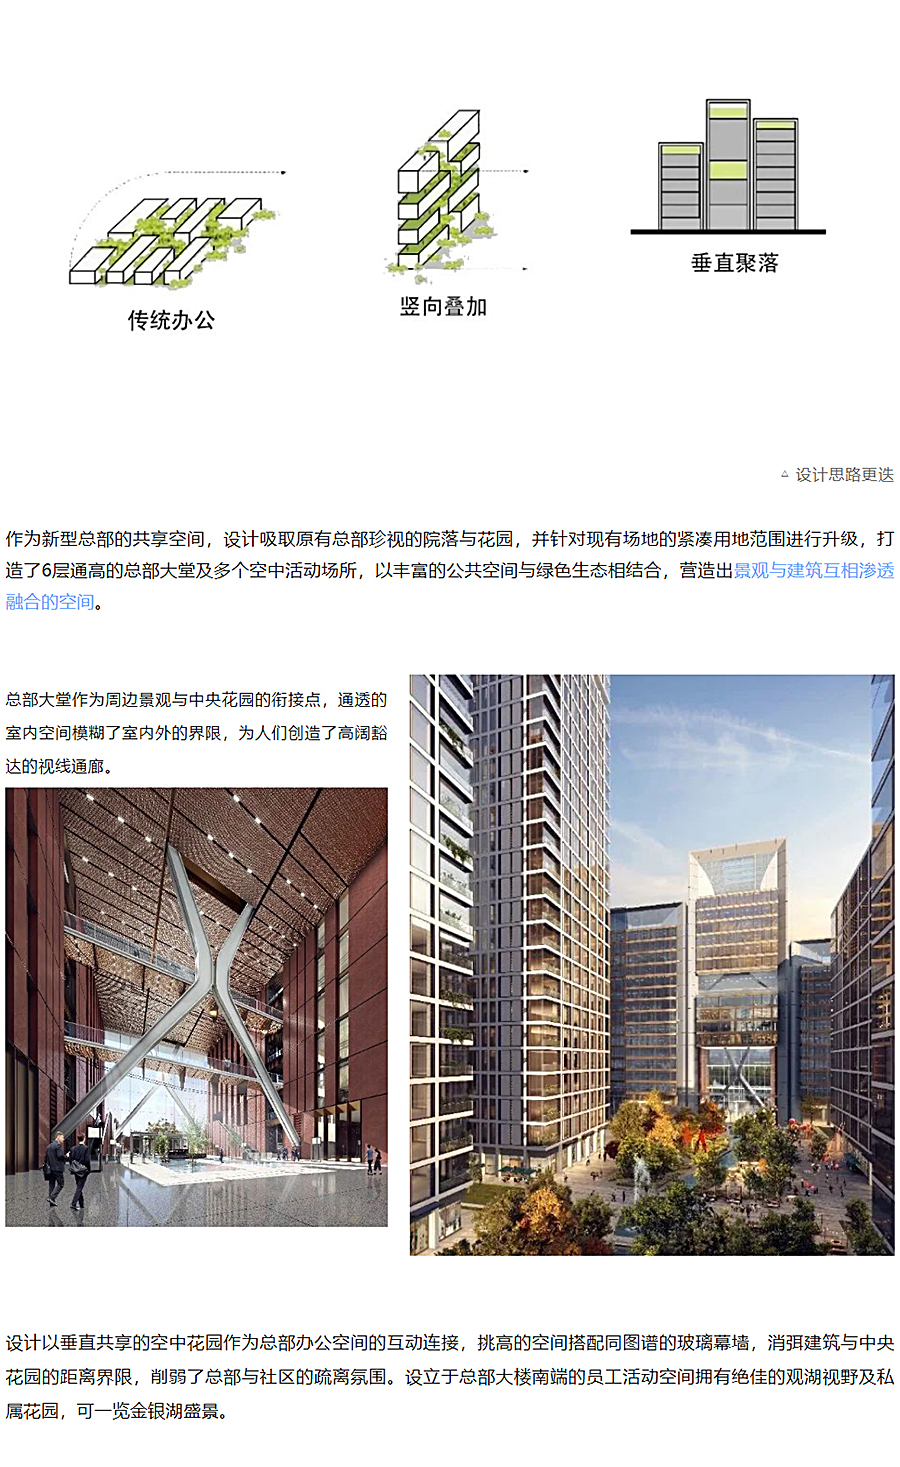 中建壹品澜荟-_-与环境共生的新型总部办公综合体_0004_图层-5.jpg